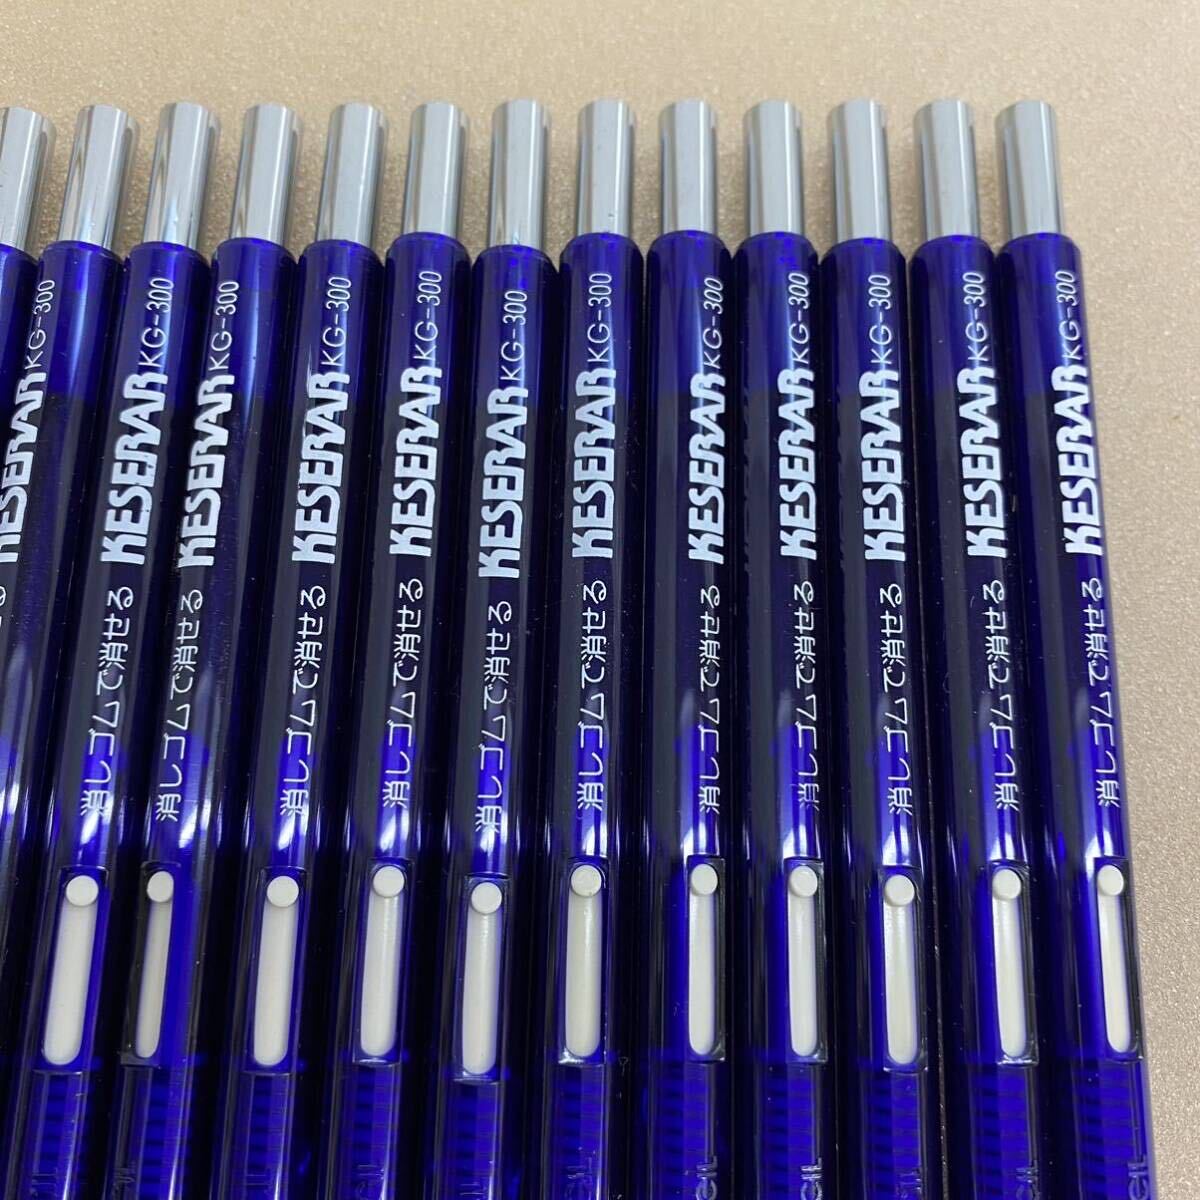 691 未使用 OHTOPENCIL オートペンシル 消しゴムで消せる KESERAR KG-300 青 ブルー 40本セット 筆記用具 文房具 保管品 インク不良_画像5